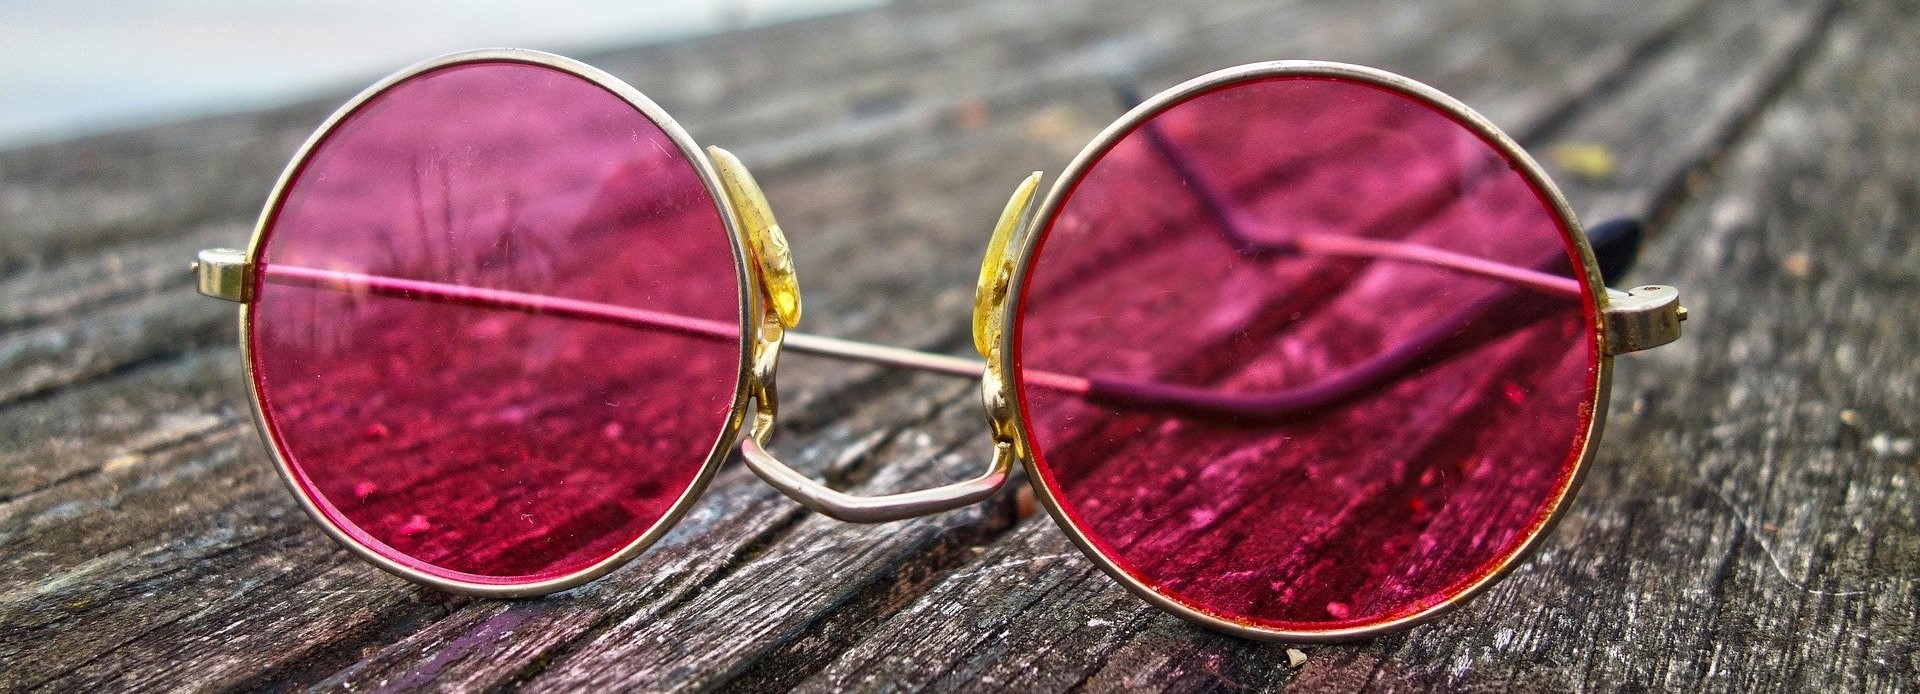 Brille glasses 3002608 1920 Bild von Mabel Amber auf Pixabay cut